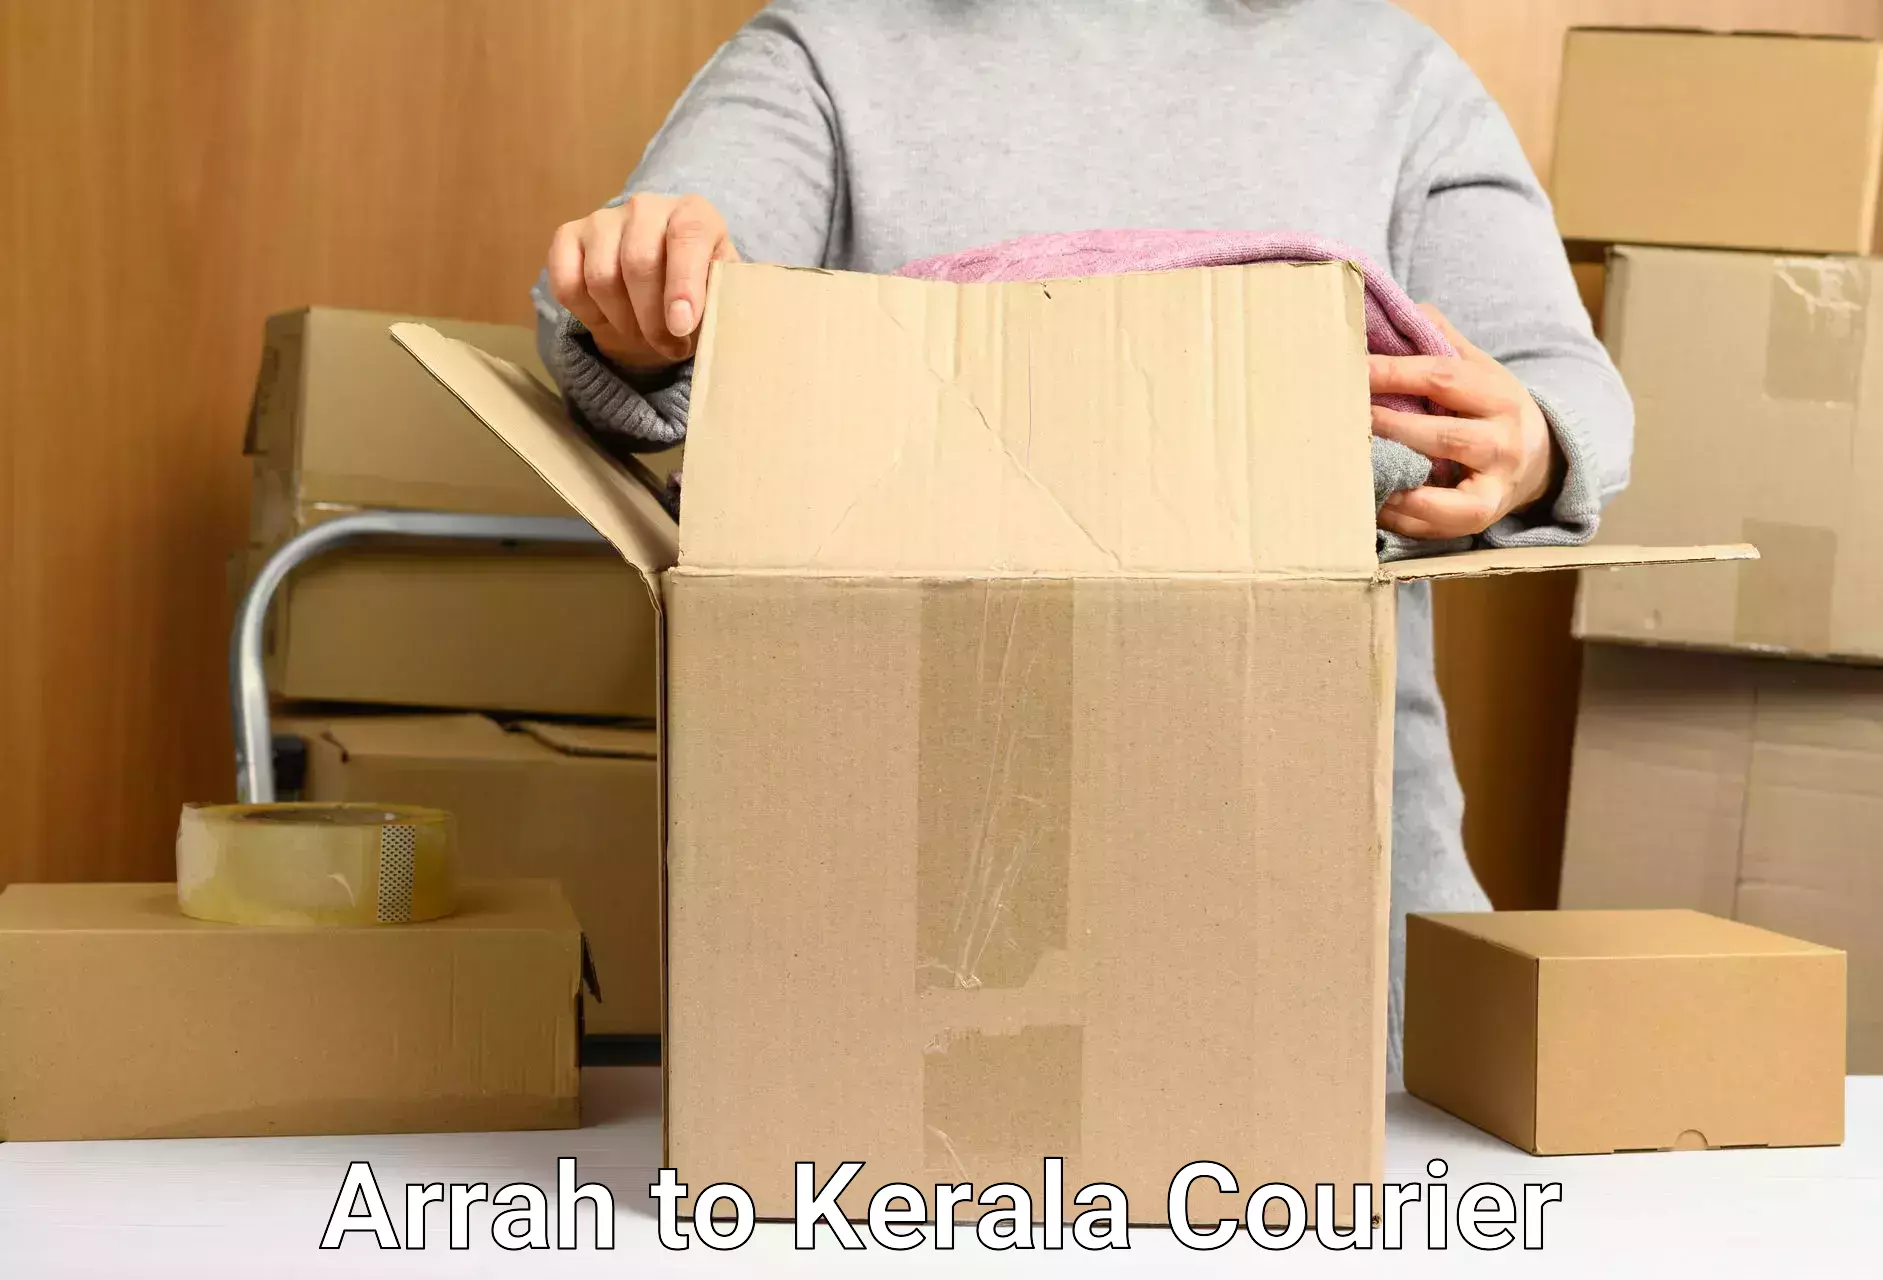 Doorstep delivery service Arrah to Akaloor